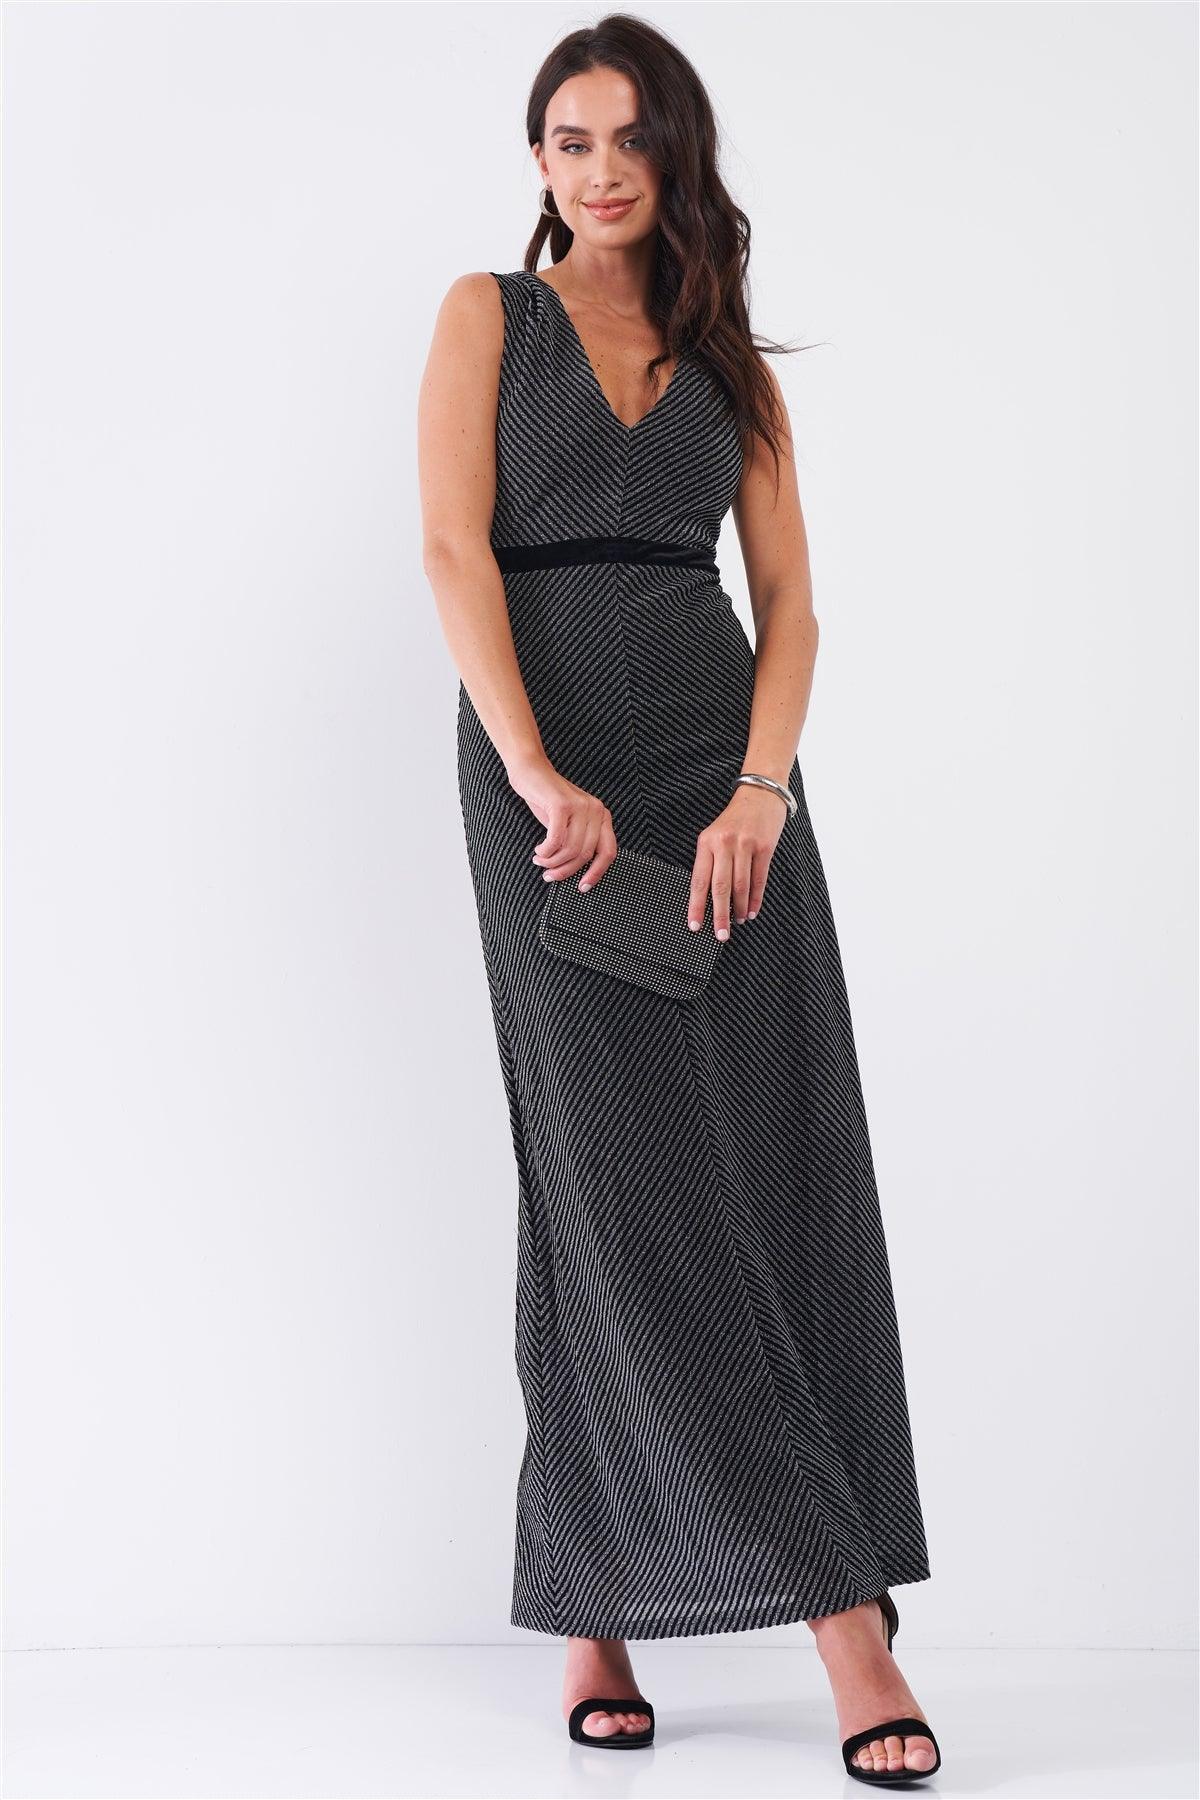 Black Silver Striped Sleeveless V-Neck Velvet Waistband Detail Fitted Maxi Dress /3-2-1